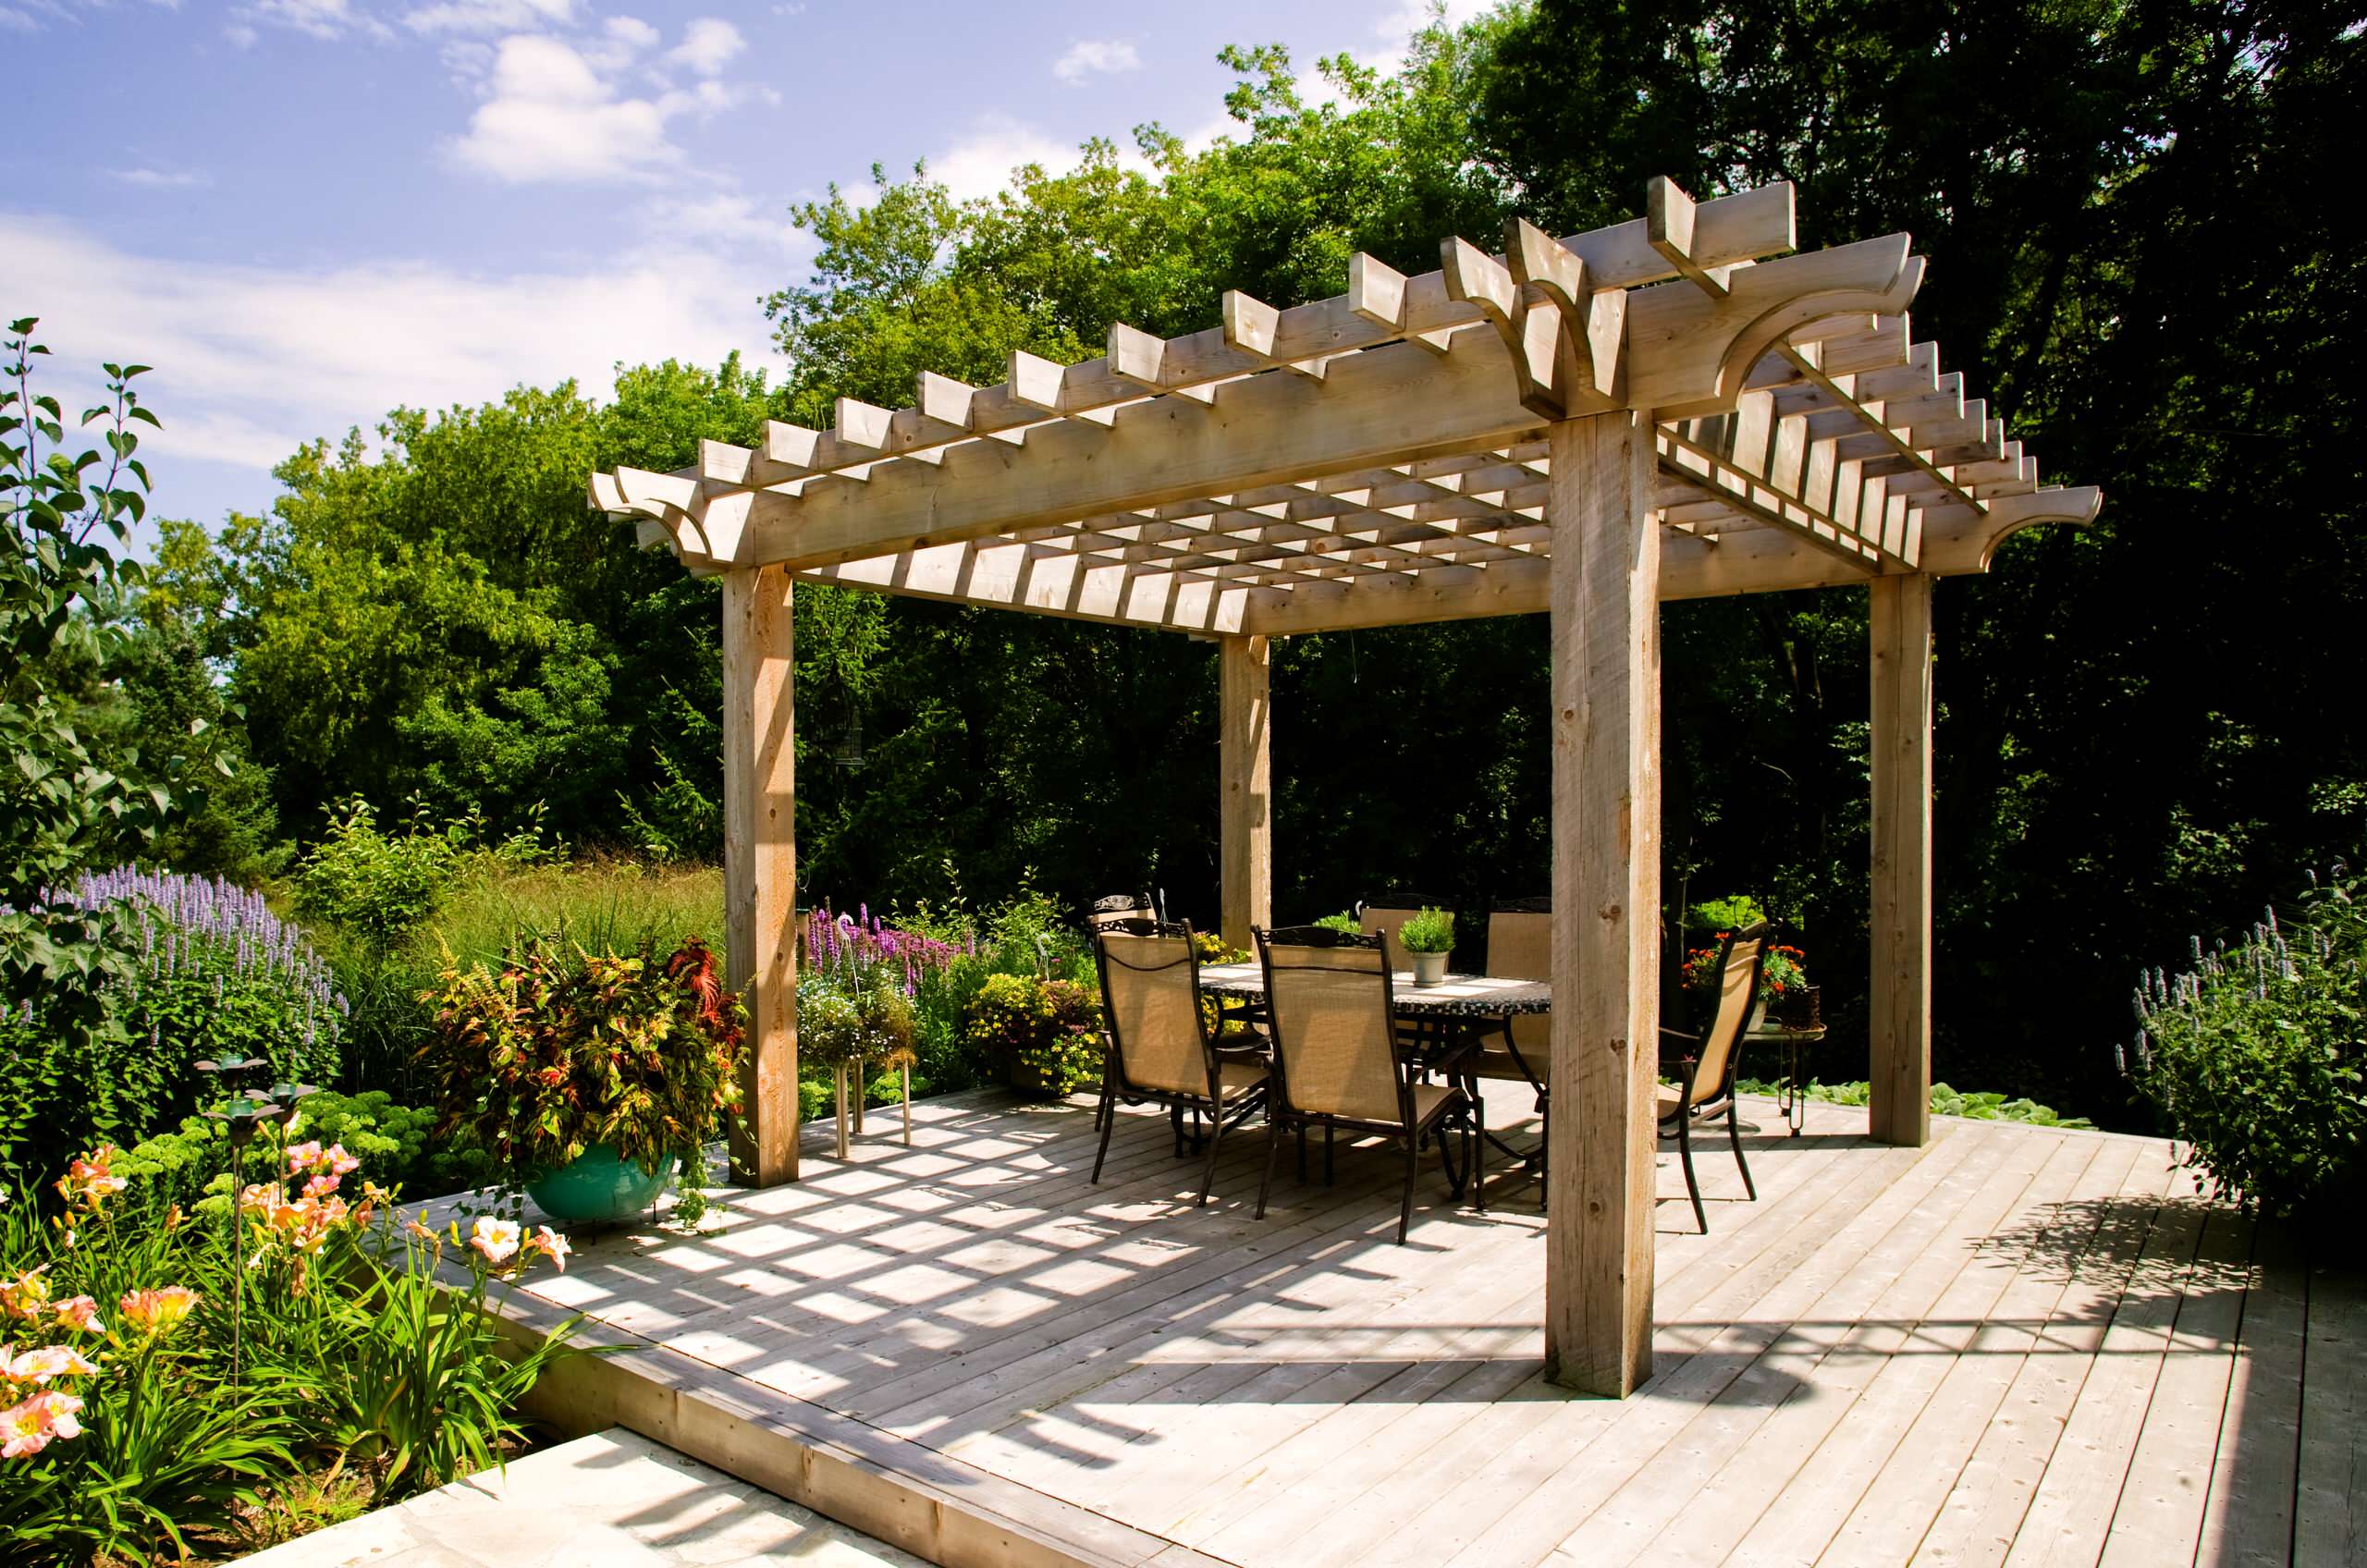 30 Ideen für Sonnenschutz im Garten - Pergola, Sonnensegel, Vordach